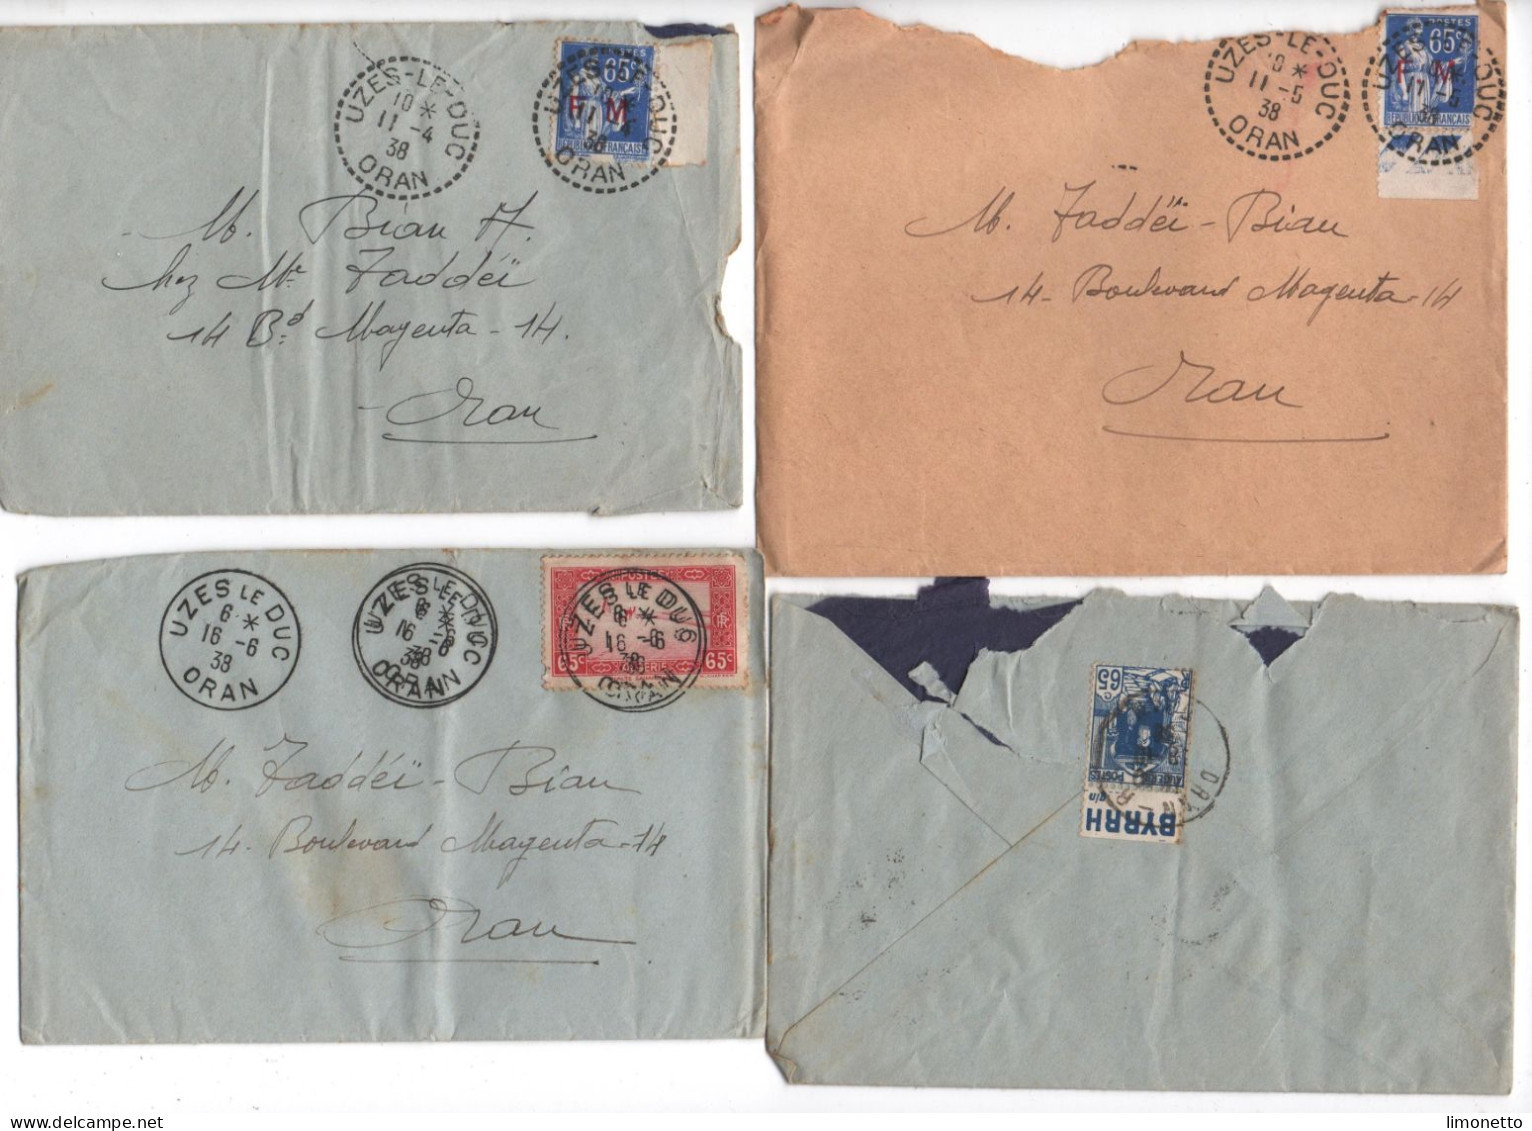 ALGERIE -1938 - Lot De 4 Enveloppes - D'UZES-le-DUC -ORAN - Aff. Divers Dont FM 65 Cts -1 Timbre Bandelette PUB - Cartas & Documentos